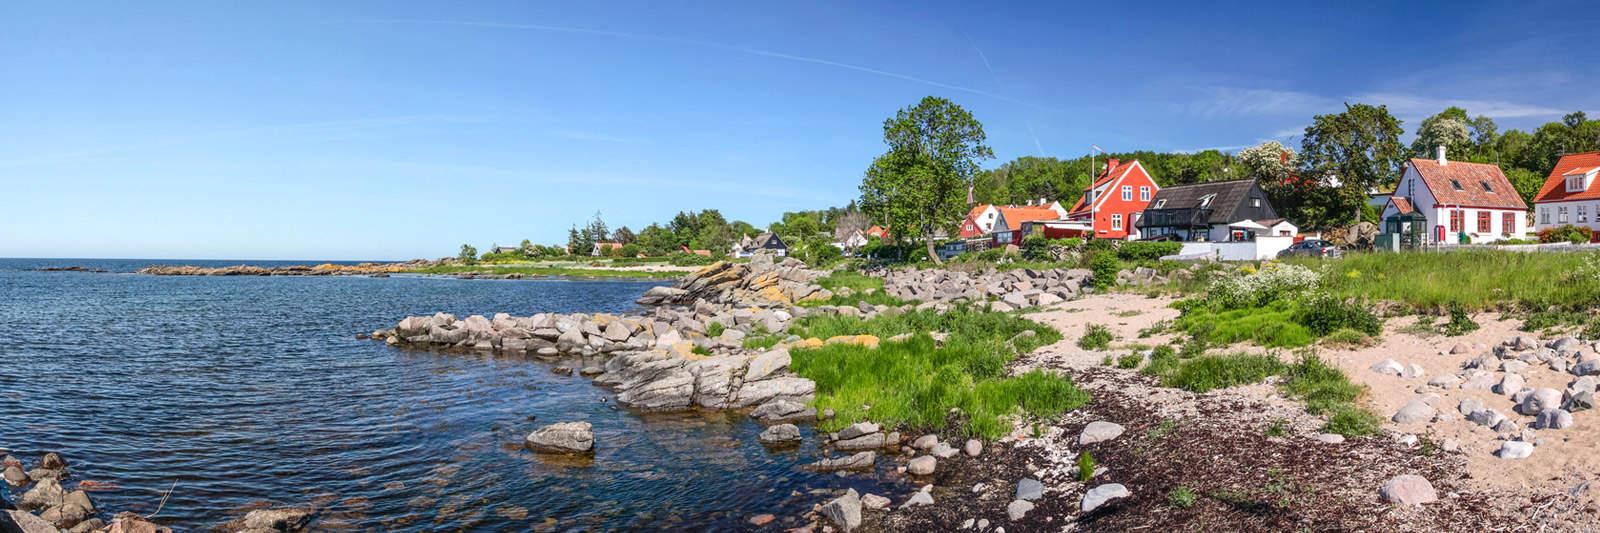 35 Ferienwohnungen und Ferienhäuser auf Hindsholm - tourist-online.de